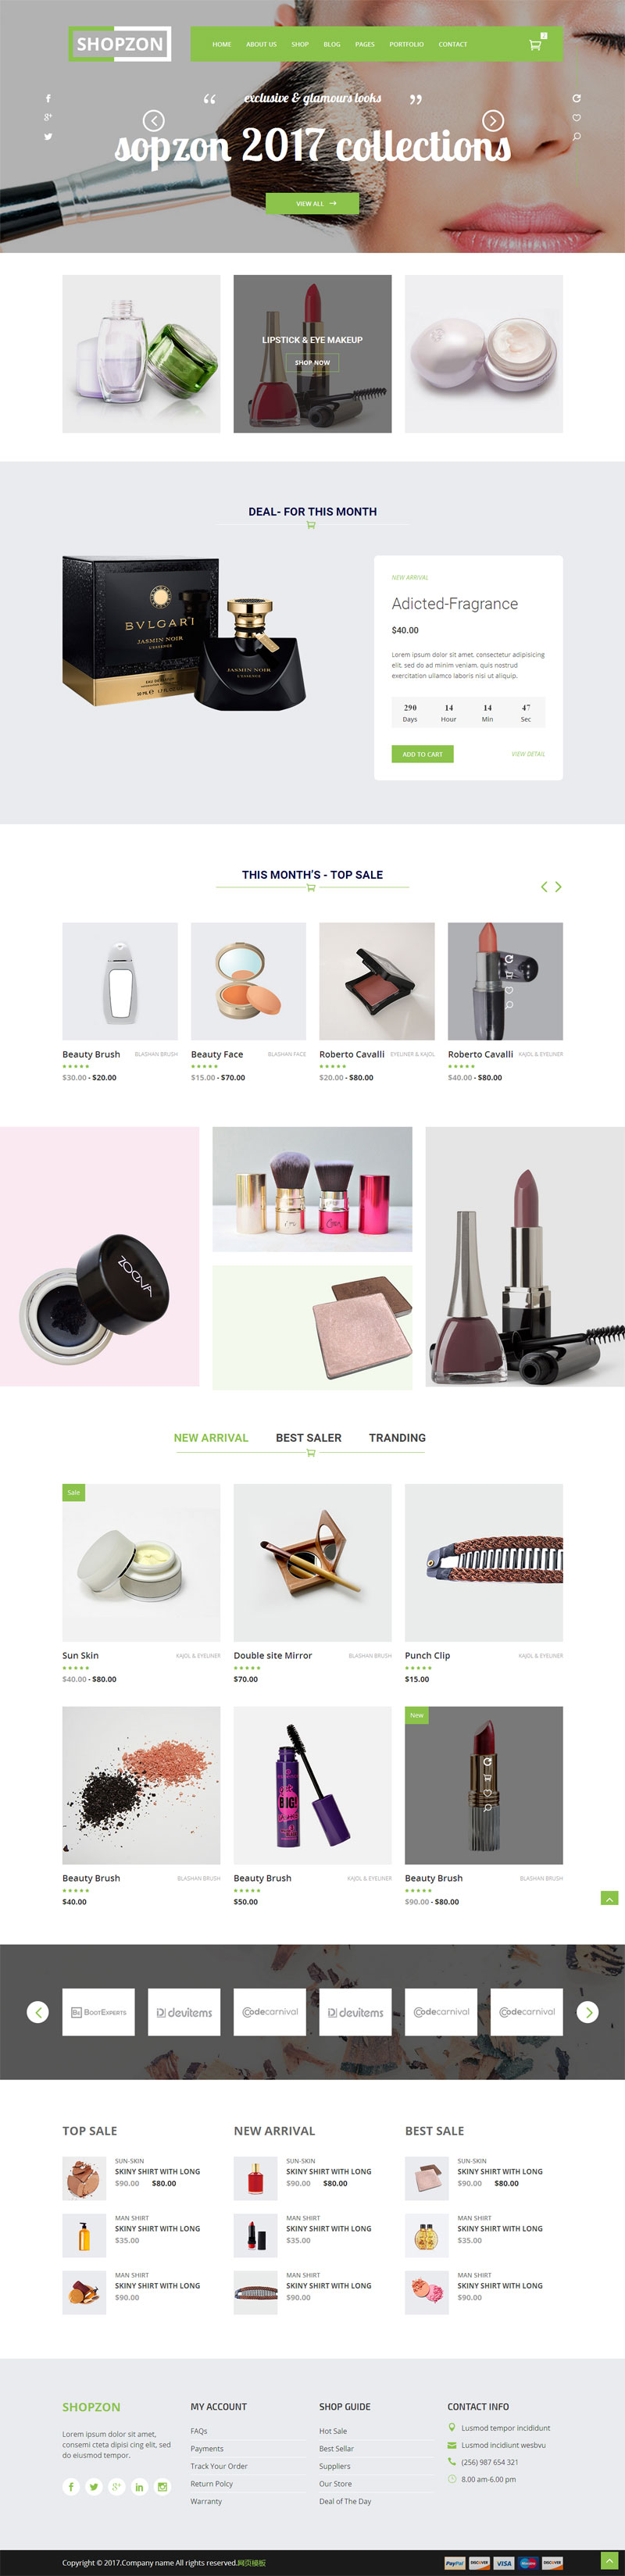 绿色大气的化妆品网上购物商城模板html整站插图源码资源库